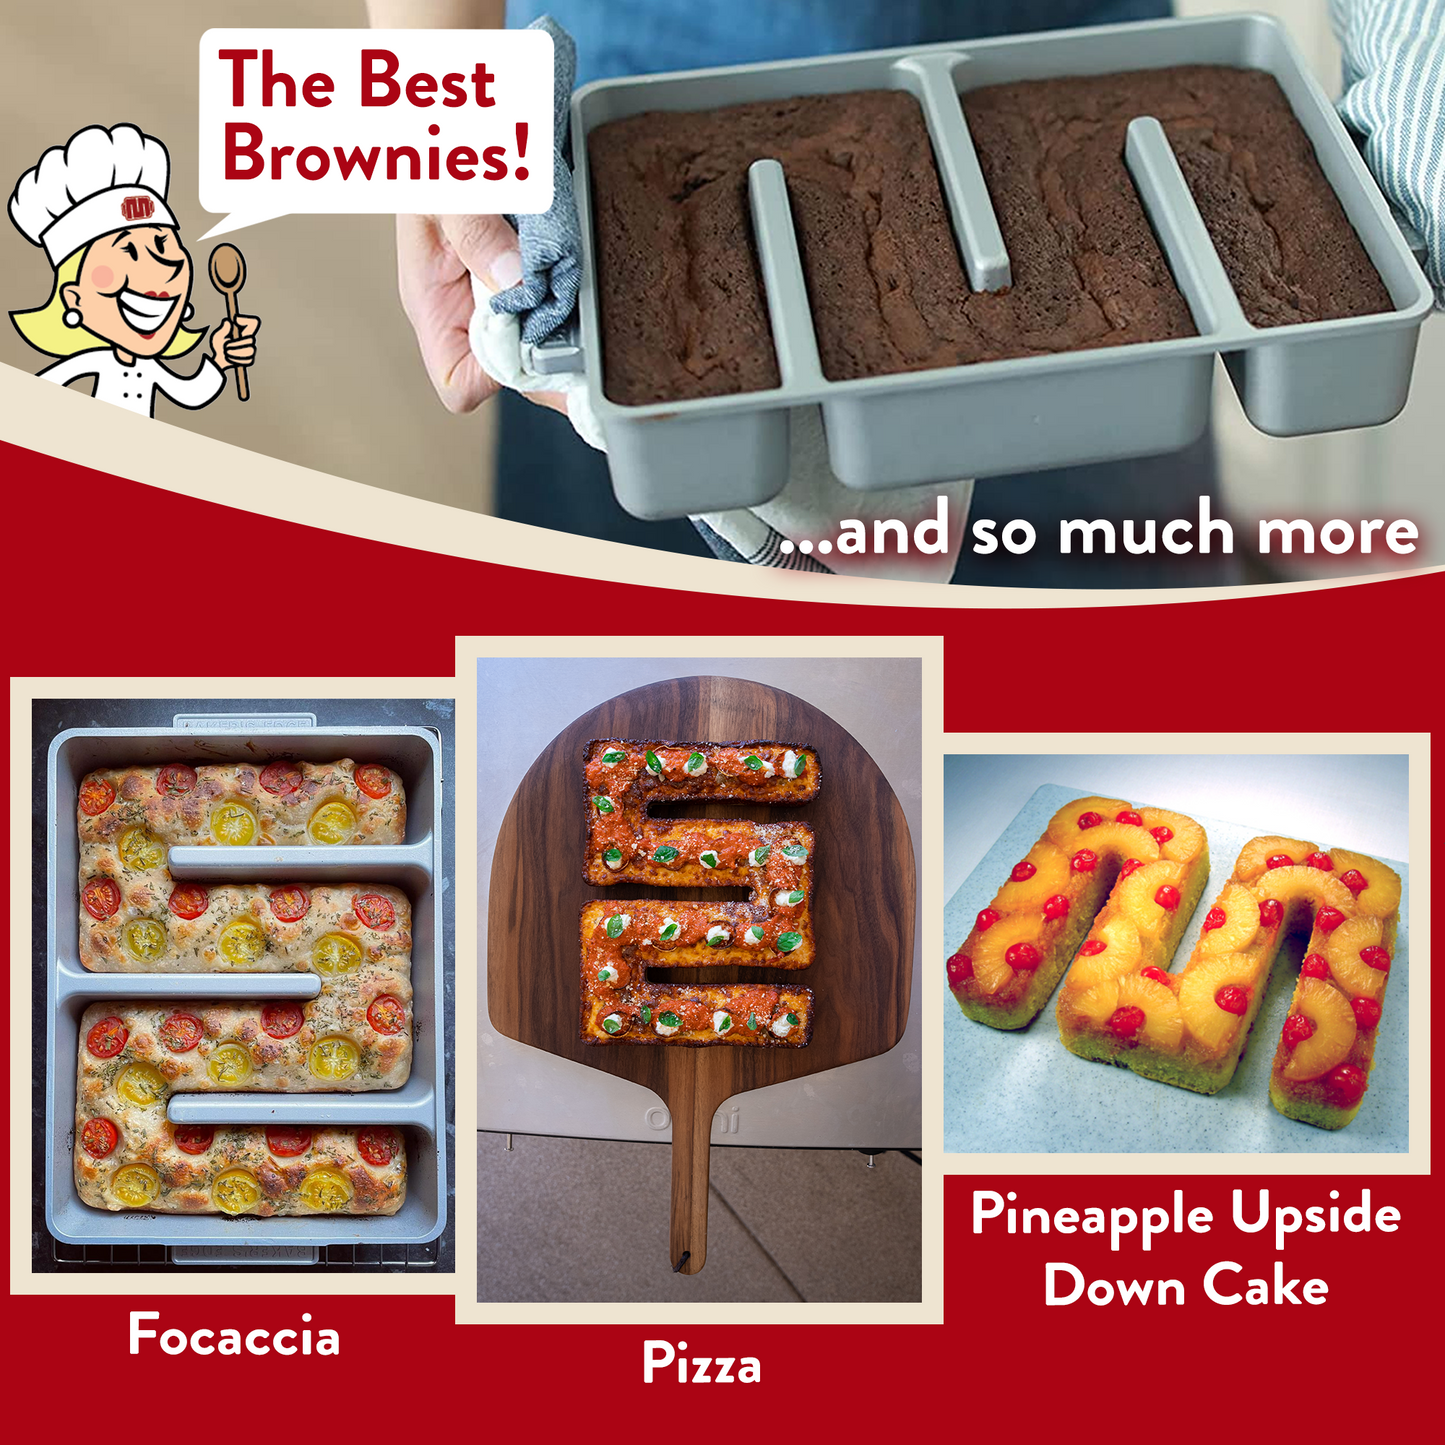 Baker's Edge Brownie Pan™ - The Original All-Edges Brownie Pan